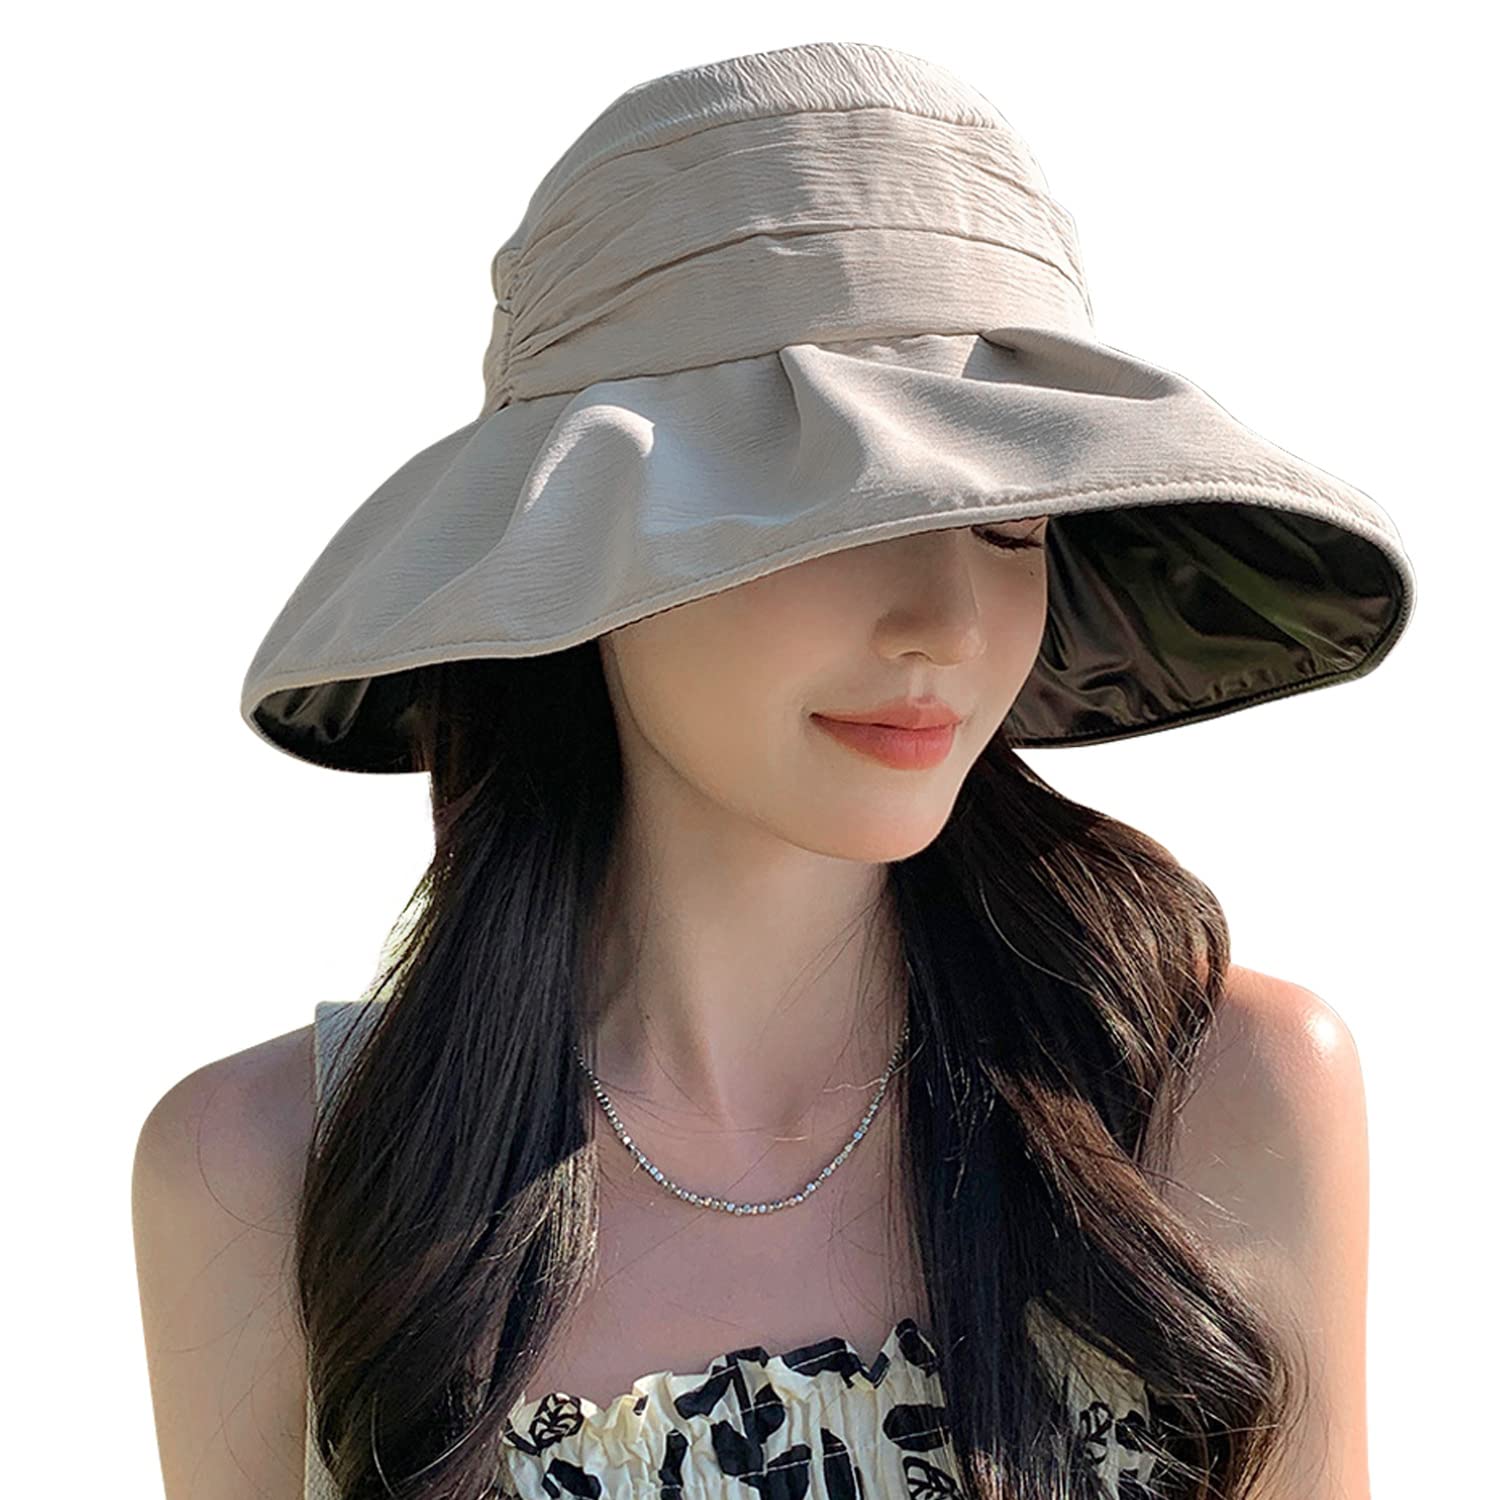 商品情報商品の説明主な仕様 【UVカット・UPF50 +】このレディース帽子のつば広いで、お顔がもちろん、首の後ろと耳を日焼けから守ります。紫外線を遮蔽でき、保護指数UPF50+こともあり、熱中症予防にも役立ちます。つばの裏面にコーティング施すことで、頭皮の蒸れ感や夏の暑さを軽減し、さらり日差しの照り返しによる眩しさ防止にもなります。日差しのきつい季節に欠かせない帽子です。br【上品な素材採用】上品なポリエステル繊維素材を採用され、通気性と吸汗に優れています。耐久性もバッチリ、長時間の着用しても頭への負担になりません。更に、抗菌防臭加工を施したスベリを使用し、細菌の増殖を抑え臭いの発生を抑制します。br【かわいいデザイン・小顔効果】頭の形が綺麗に見えるようシルエットにこだわって作られています。帽子の後ろには大きなリボンがついていて、可愛らしさをプラスしてくれます。日焼け防止の一方で、帽子が驚きの小顔効果を発揮しています。頭に被るだけで、視覚的に小顔に見え、急なお出かけ時のスッピン隠しにも最適！br【あご紐とソフトワイヤー入り】帽子の周りにはソフトワイヤーを加えて、ご自分の好みとスタイルに合わせて折り曲げ可能です。取り外し可能なあご紐が付き、あご紐の両端のホックを内側にあるループに引っ掛けるだけ、簡単に使用可能です。風が強い日や自転車にのる時にサイズ合わせて調整すれば風に吹き飛ぶ心配がない！風がない時、取り外すことができるから邪魔になることはありません。br【アウトドアシーンに大活躍】シワになりにくい素材を使用し、丸く畳んでカバンに収納して空間が取らなく、持ち運びに便利です。日常通学通勤はもちろん、運動会、山登り、遊園地、ガーデニング、ピクニック、遠足、旅行、散歩、海水浴、ウォーキング、トレッキング様々な場合に最適なUVカットハットです。